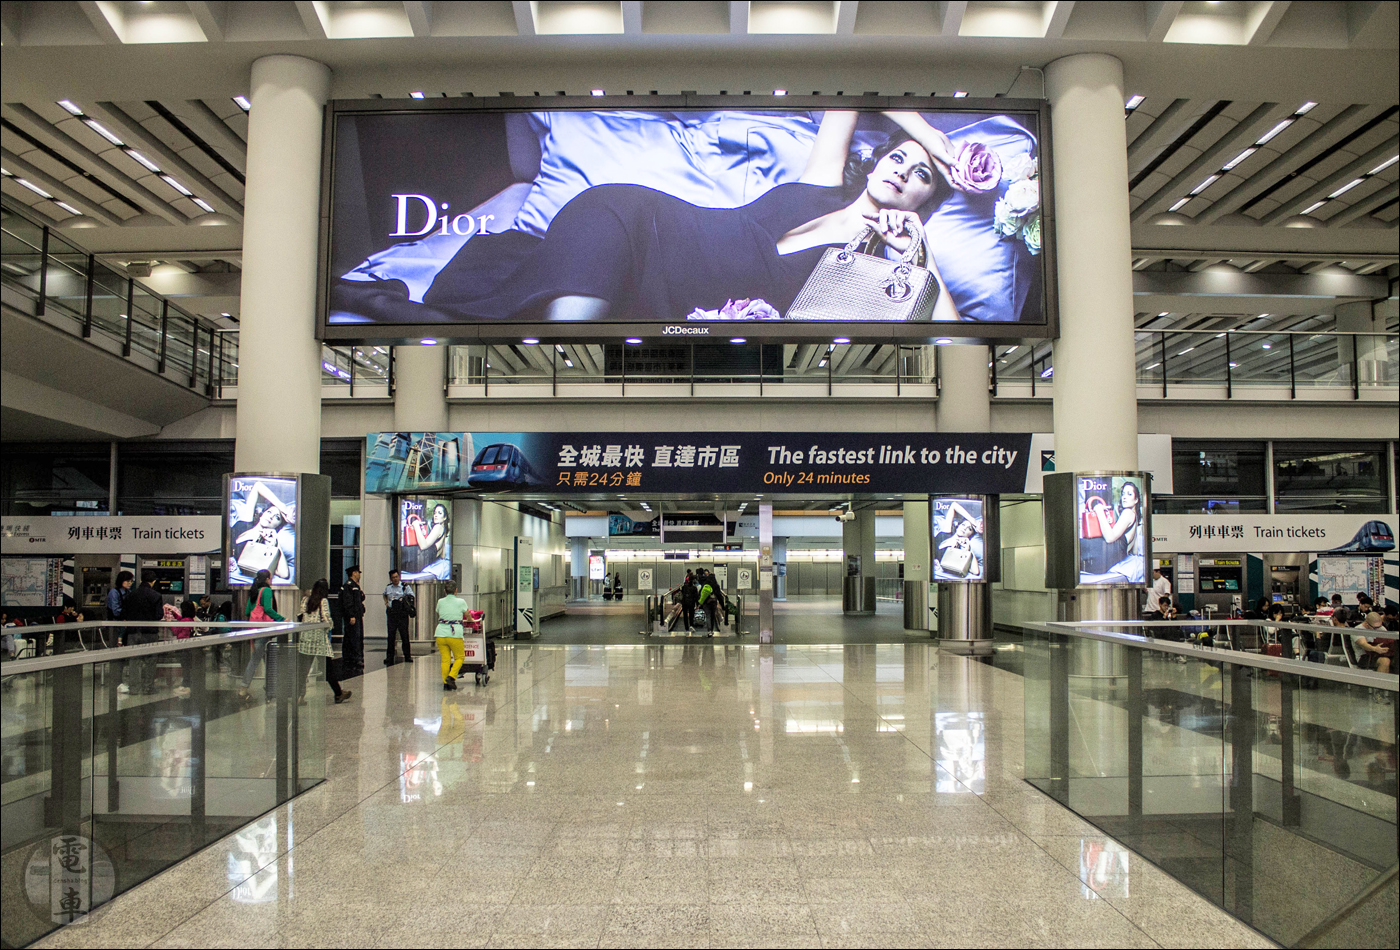 A hongkongi Aiport Express hívogató bejárata az 1-es terminál felőli oldalon.